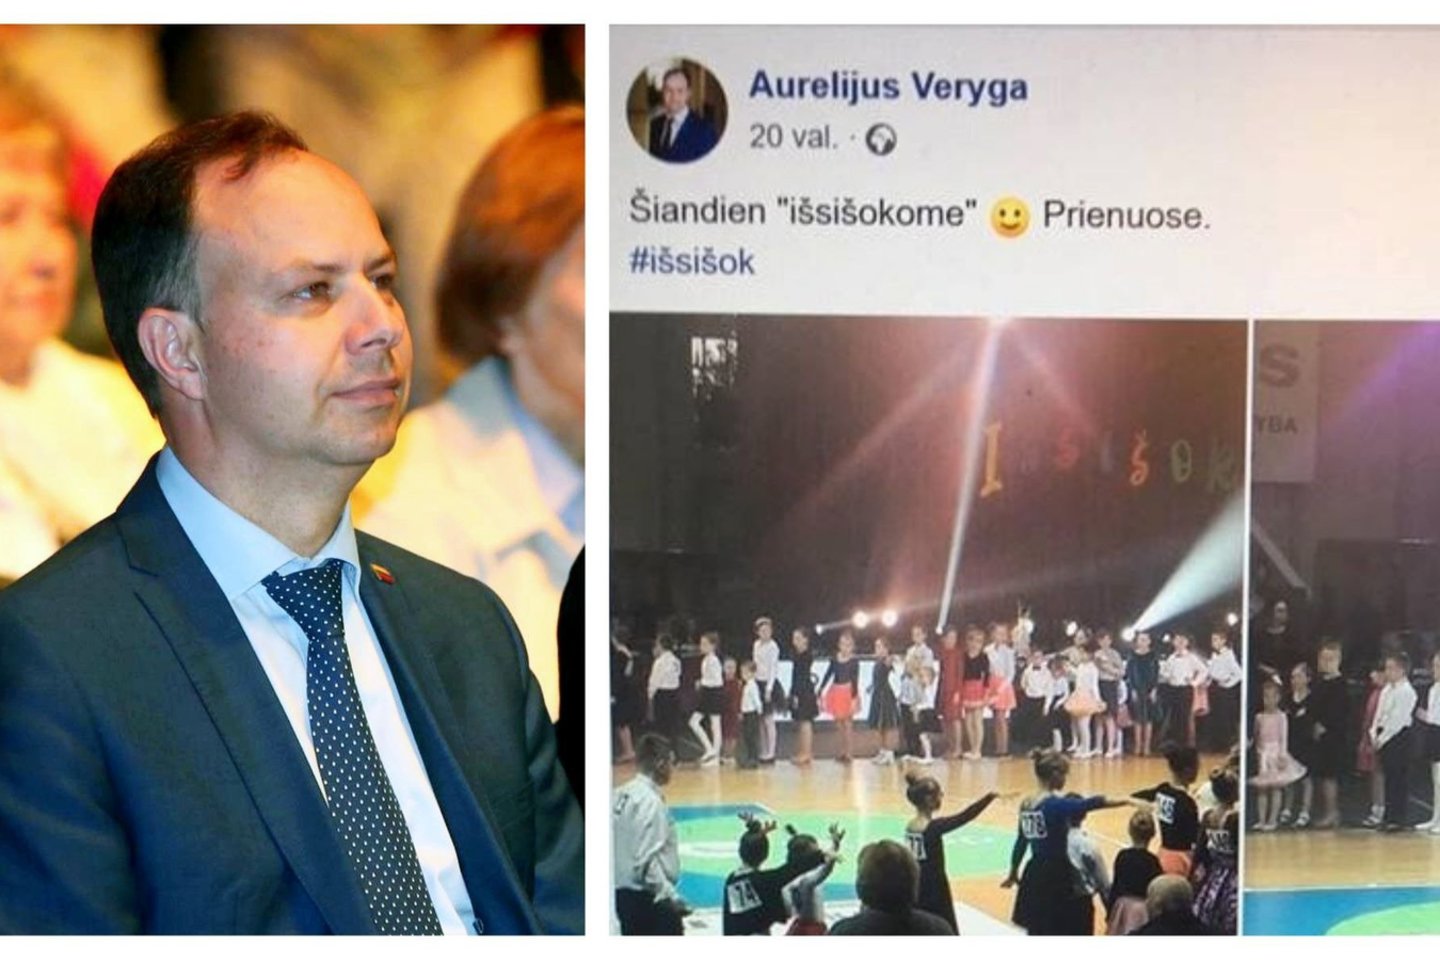 Vaistininkė nusistebėjo, kad Sveikatos apsaugos ministras Aurelijus Veryga pirmąkart vykusius farmacininkų apdovanojimus iškeitė į vaikų šventes. <br> M. Patašiaus ir Facebook nuotr.